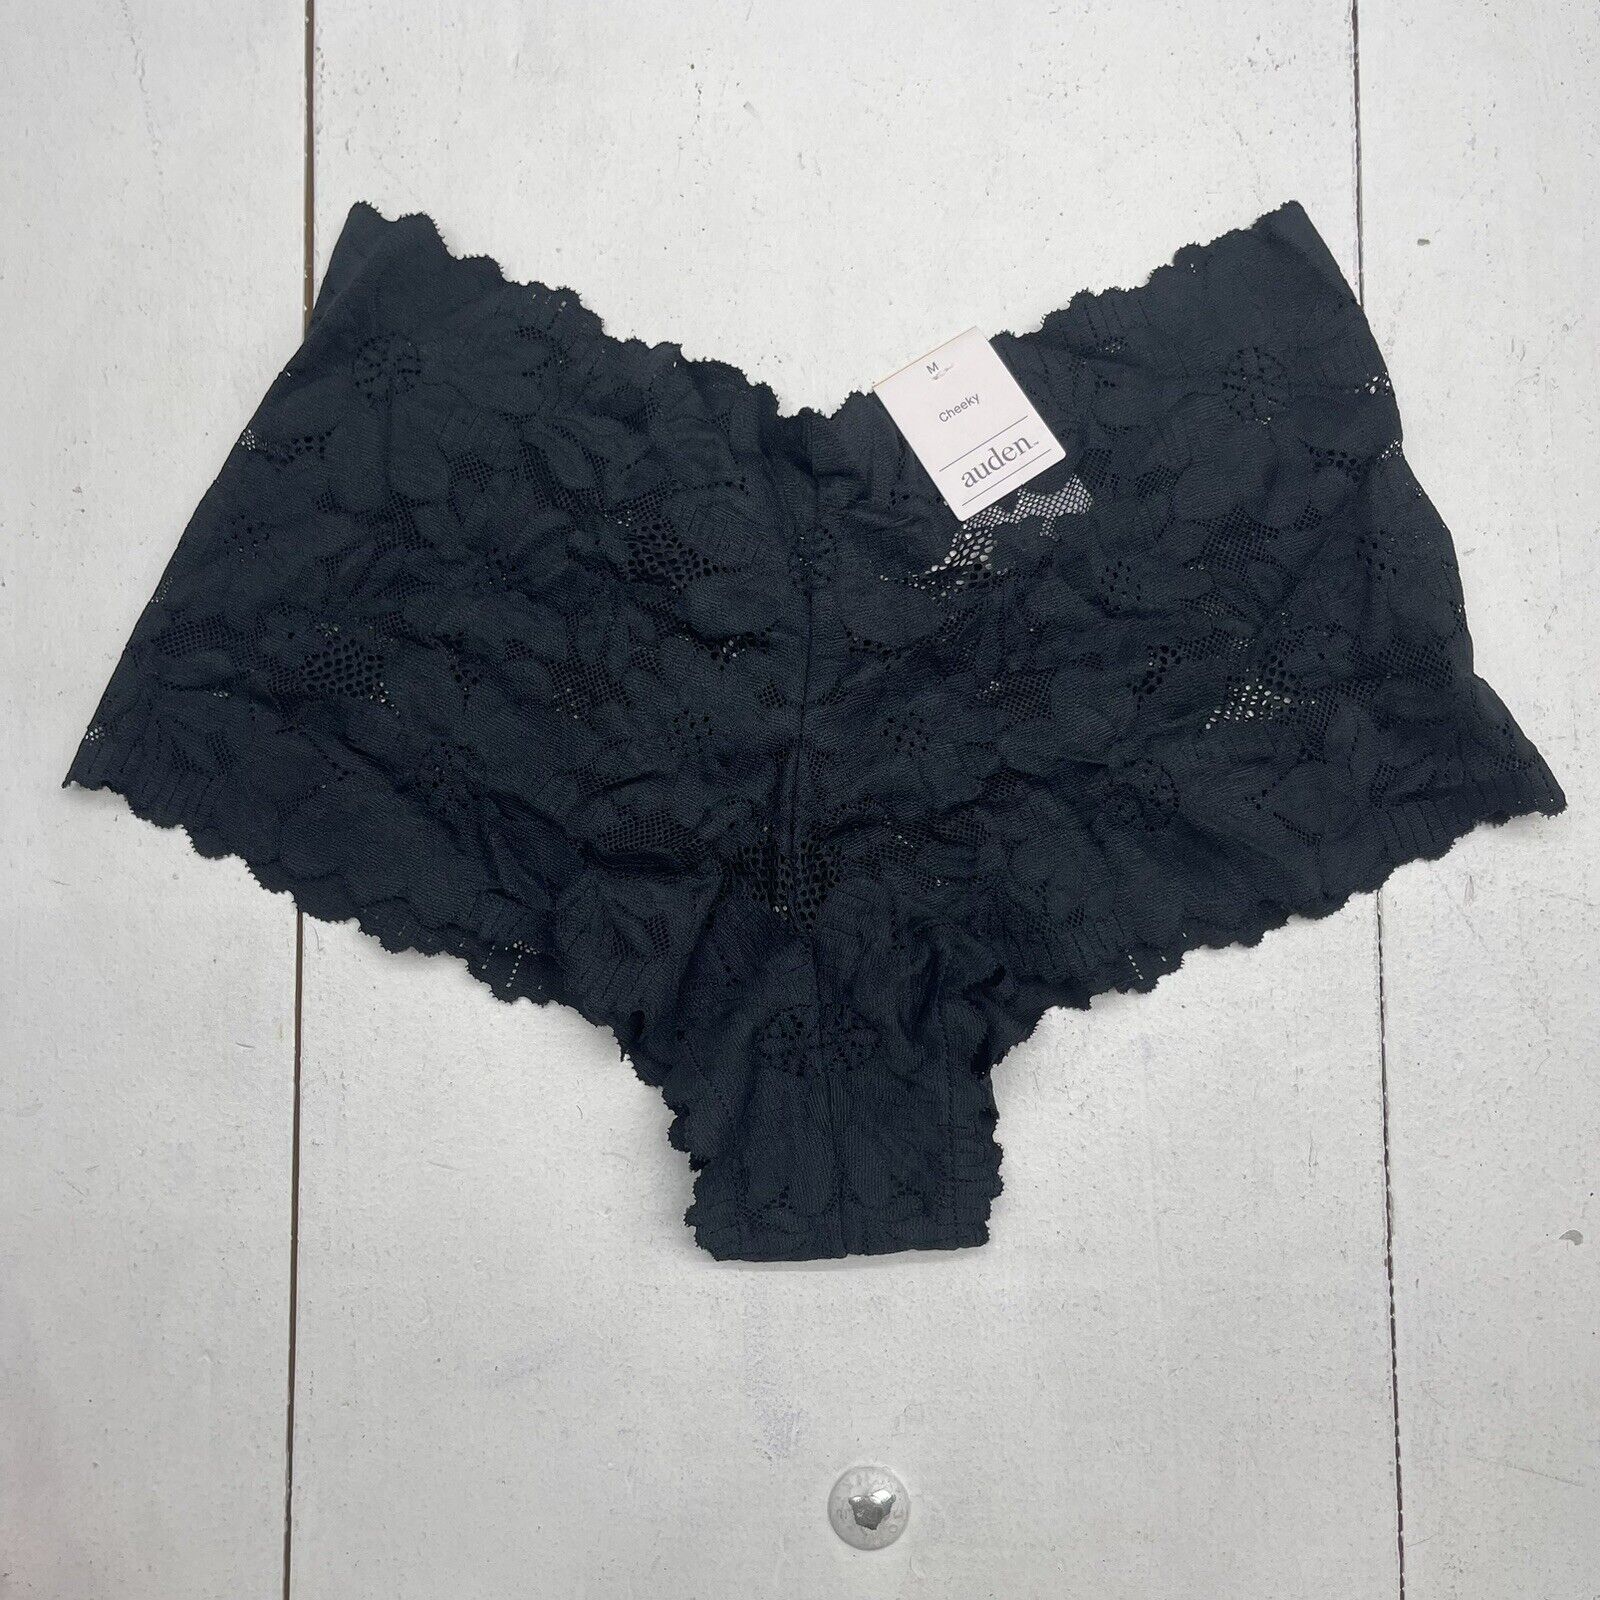 Auden Black Lace Cheeky Underwear Women’s Size Medium New